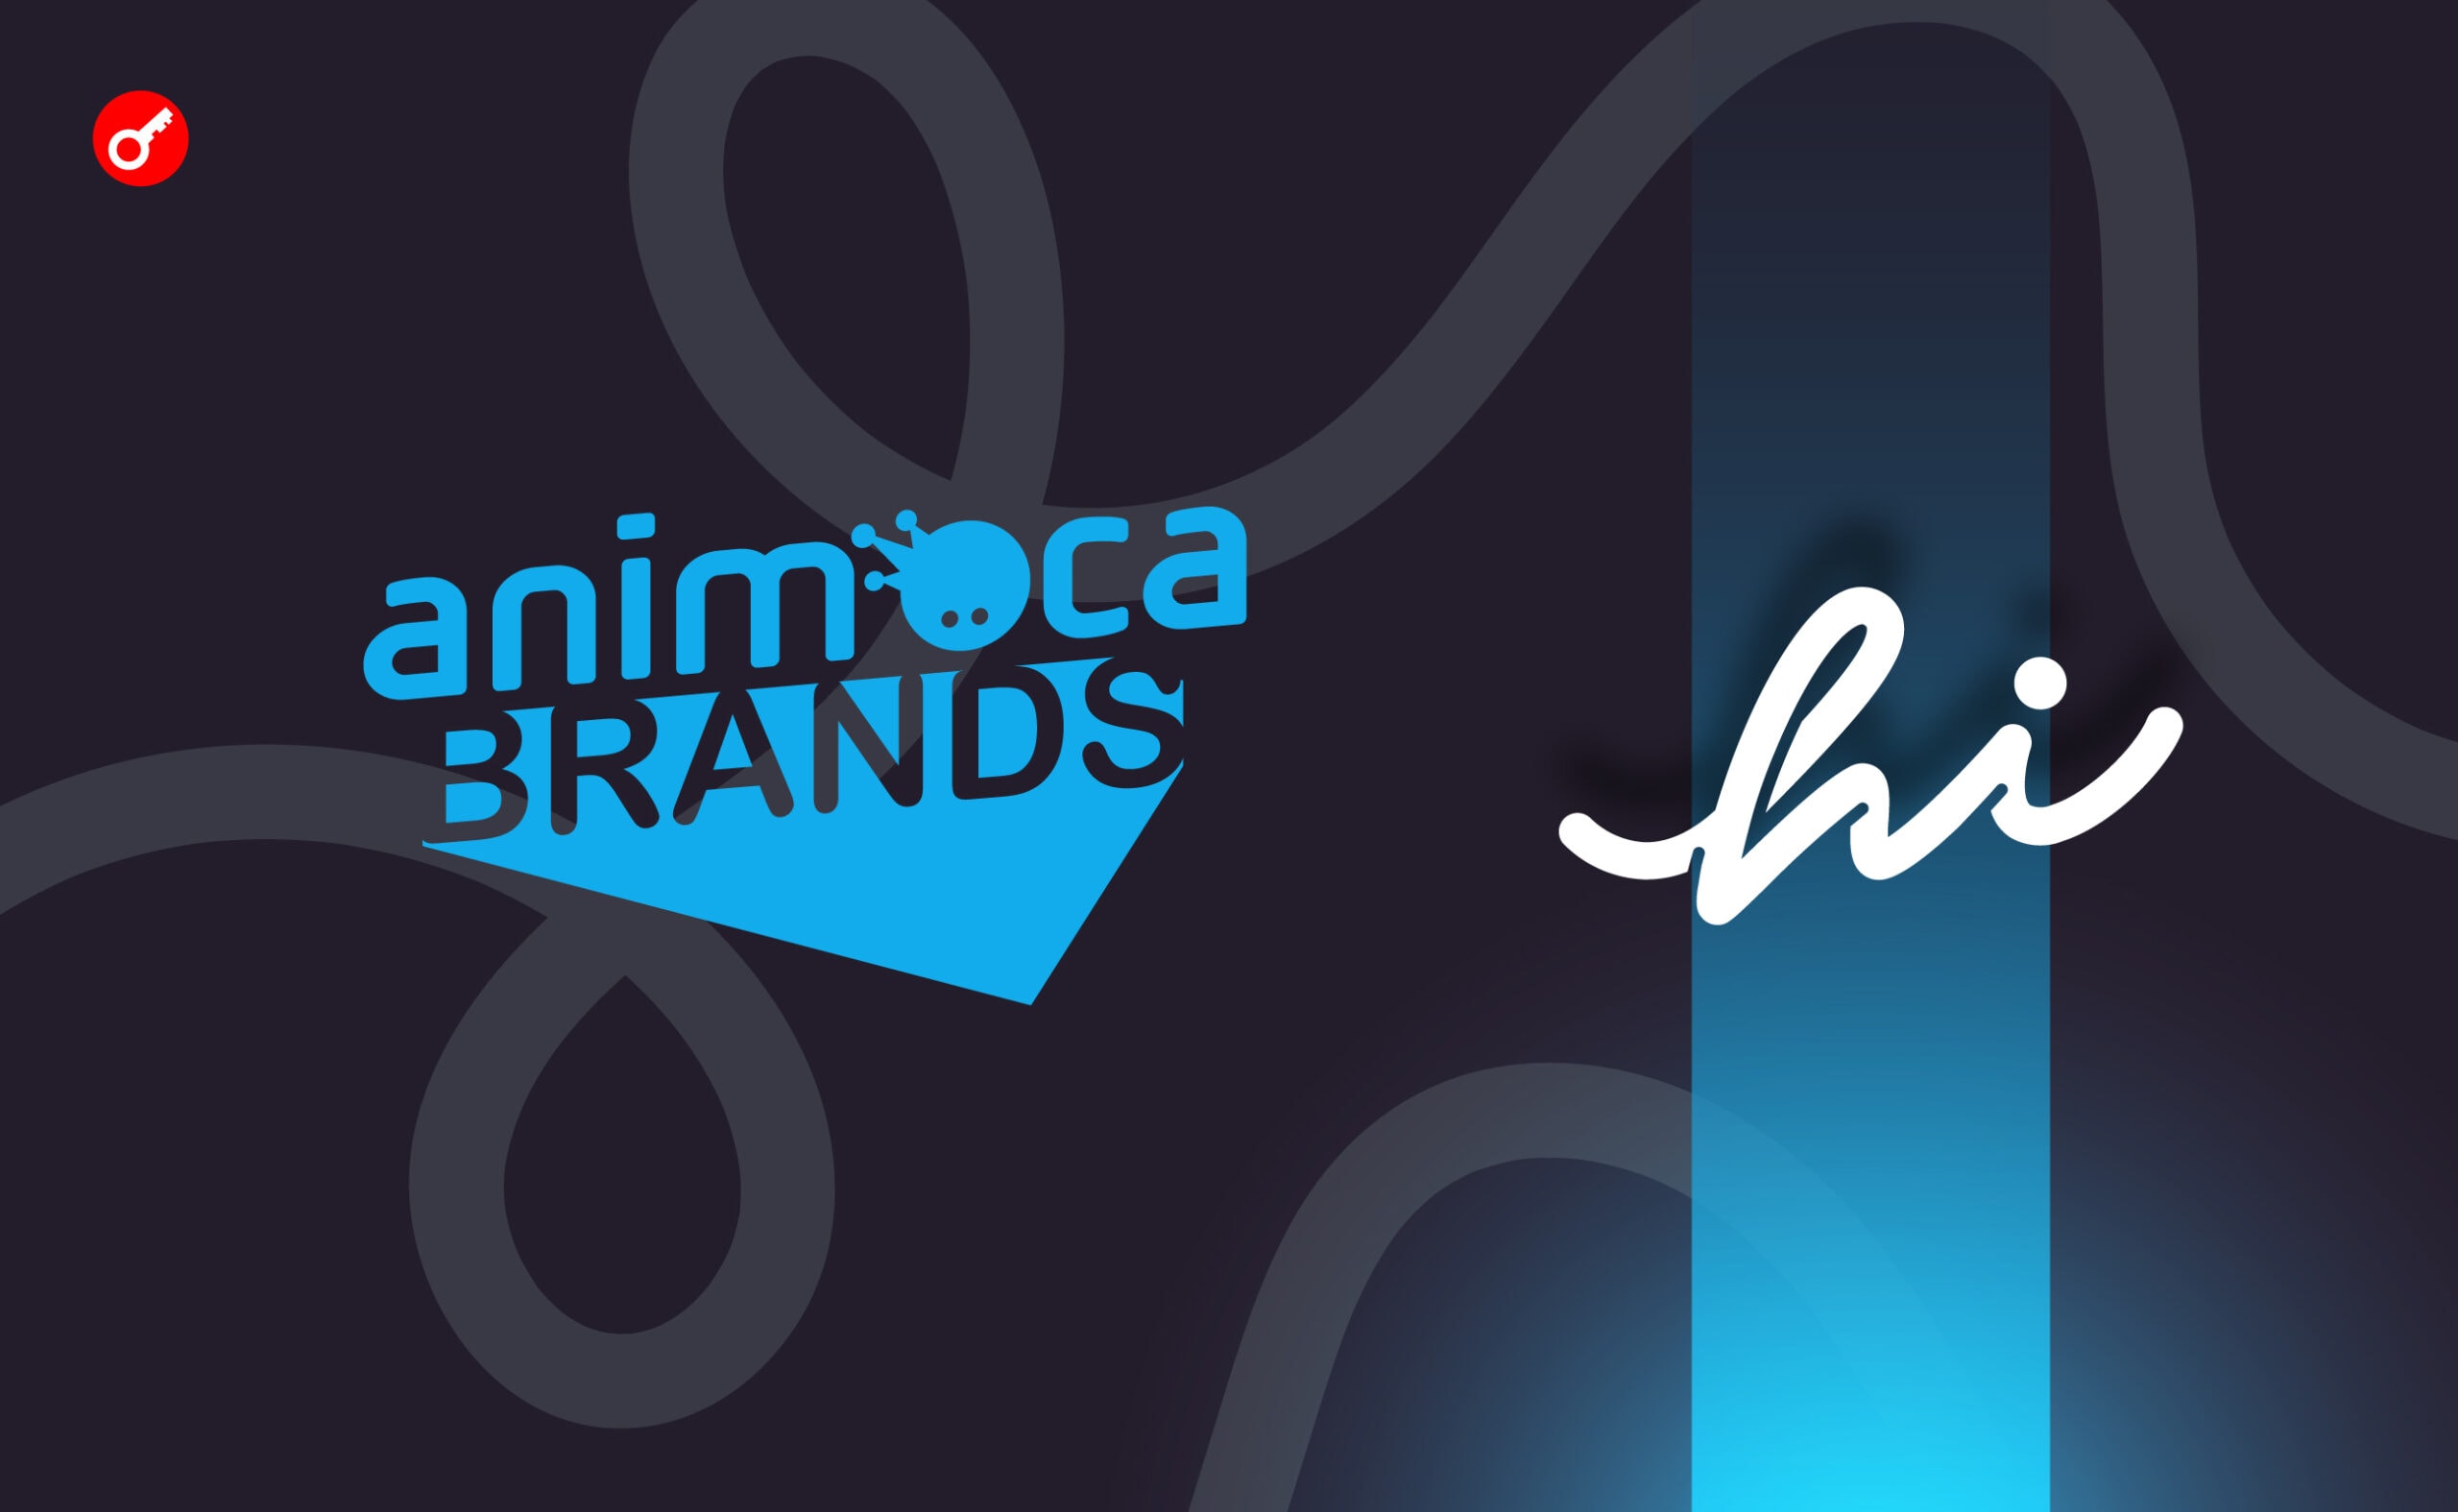 Animoca Brand інвестувала $30 млн у необанк hi. Головний колаж новини.